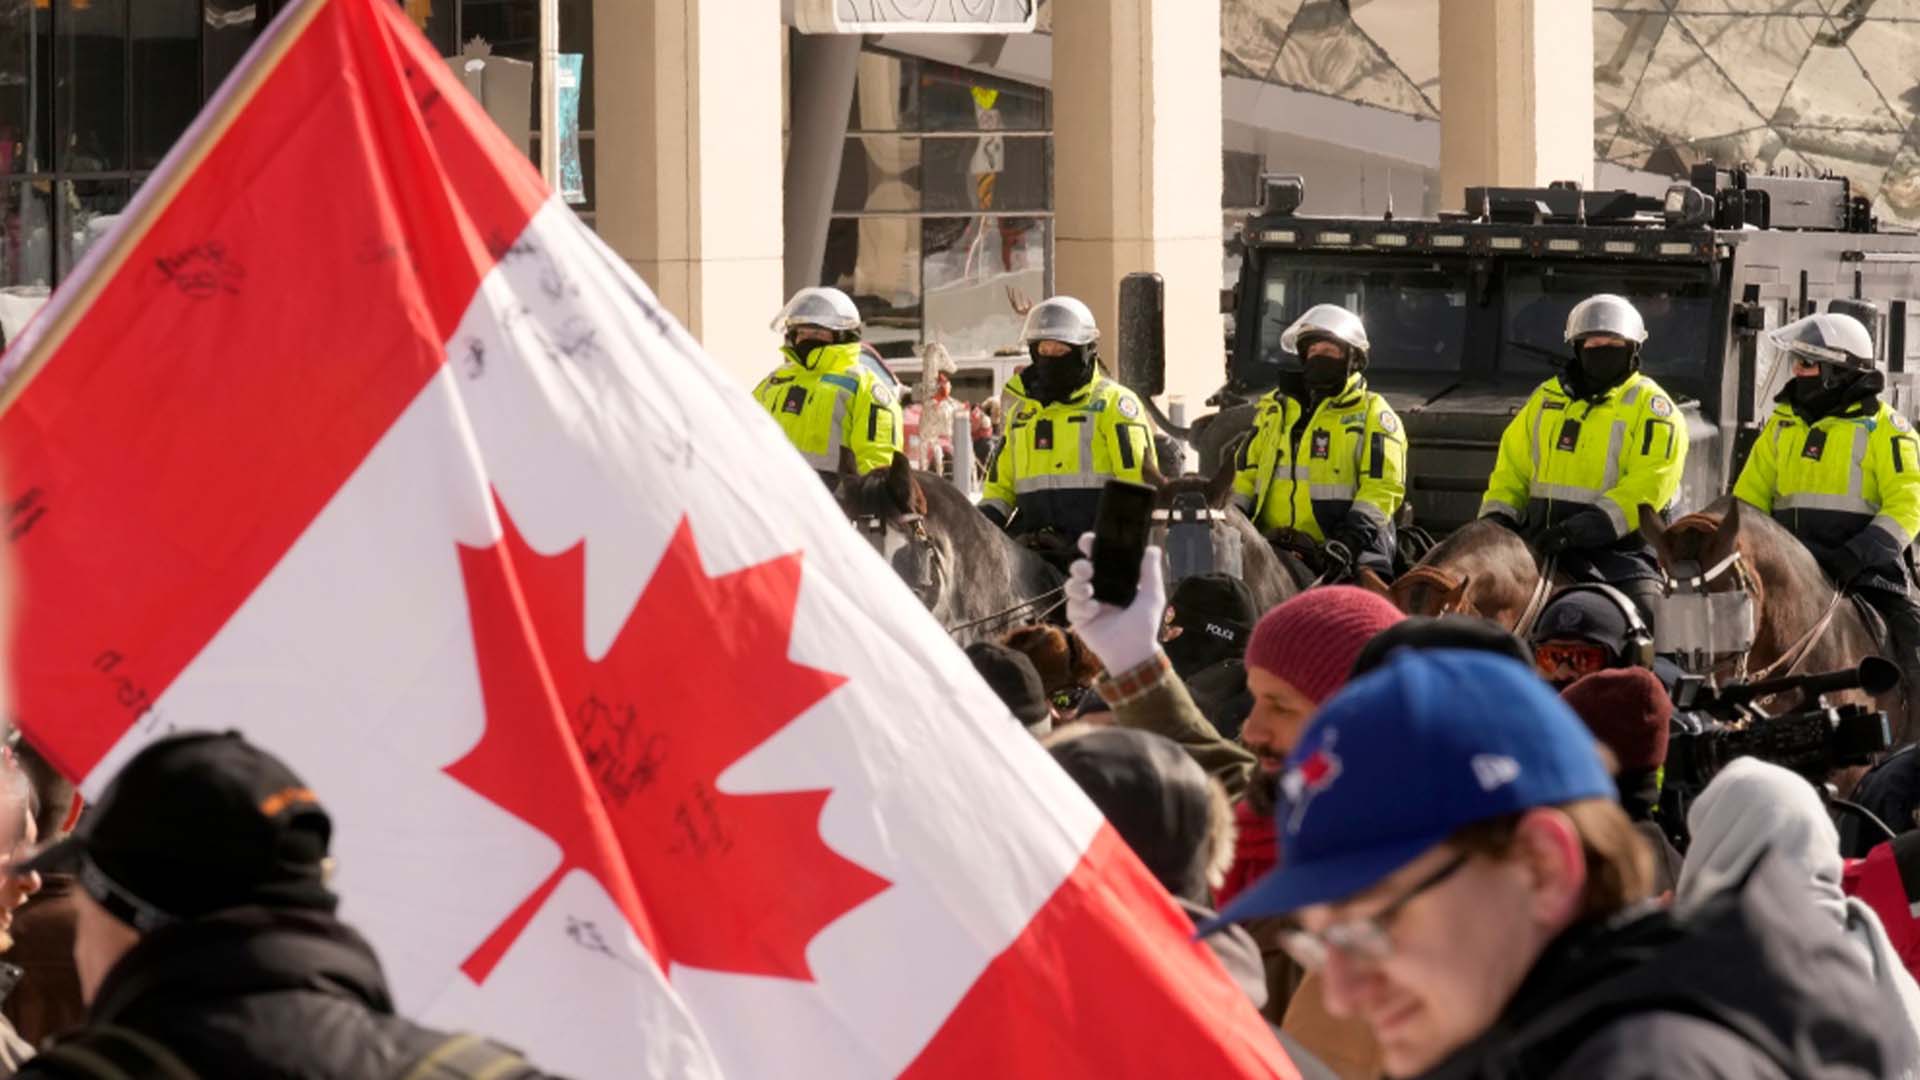 Des unités montées forment une ligne alors que la police travaille pour organiser une manifestation à Ottawa, le vendredi 18 février 2022 